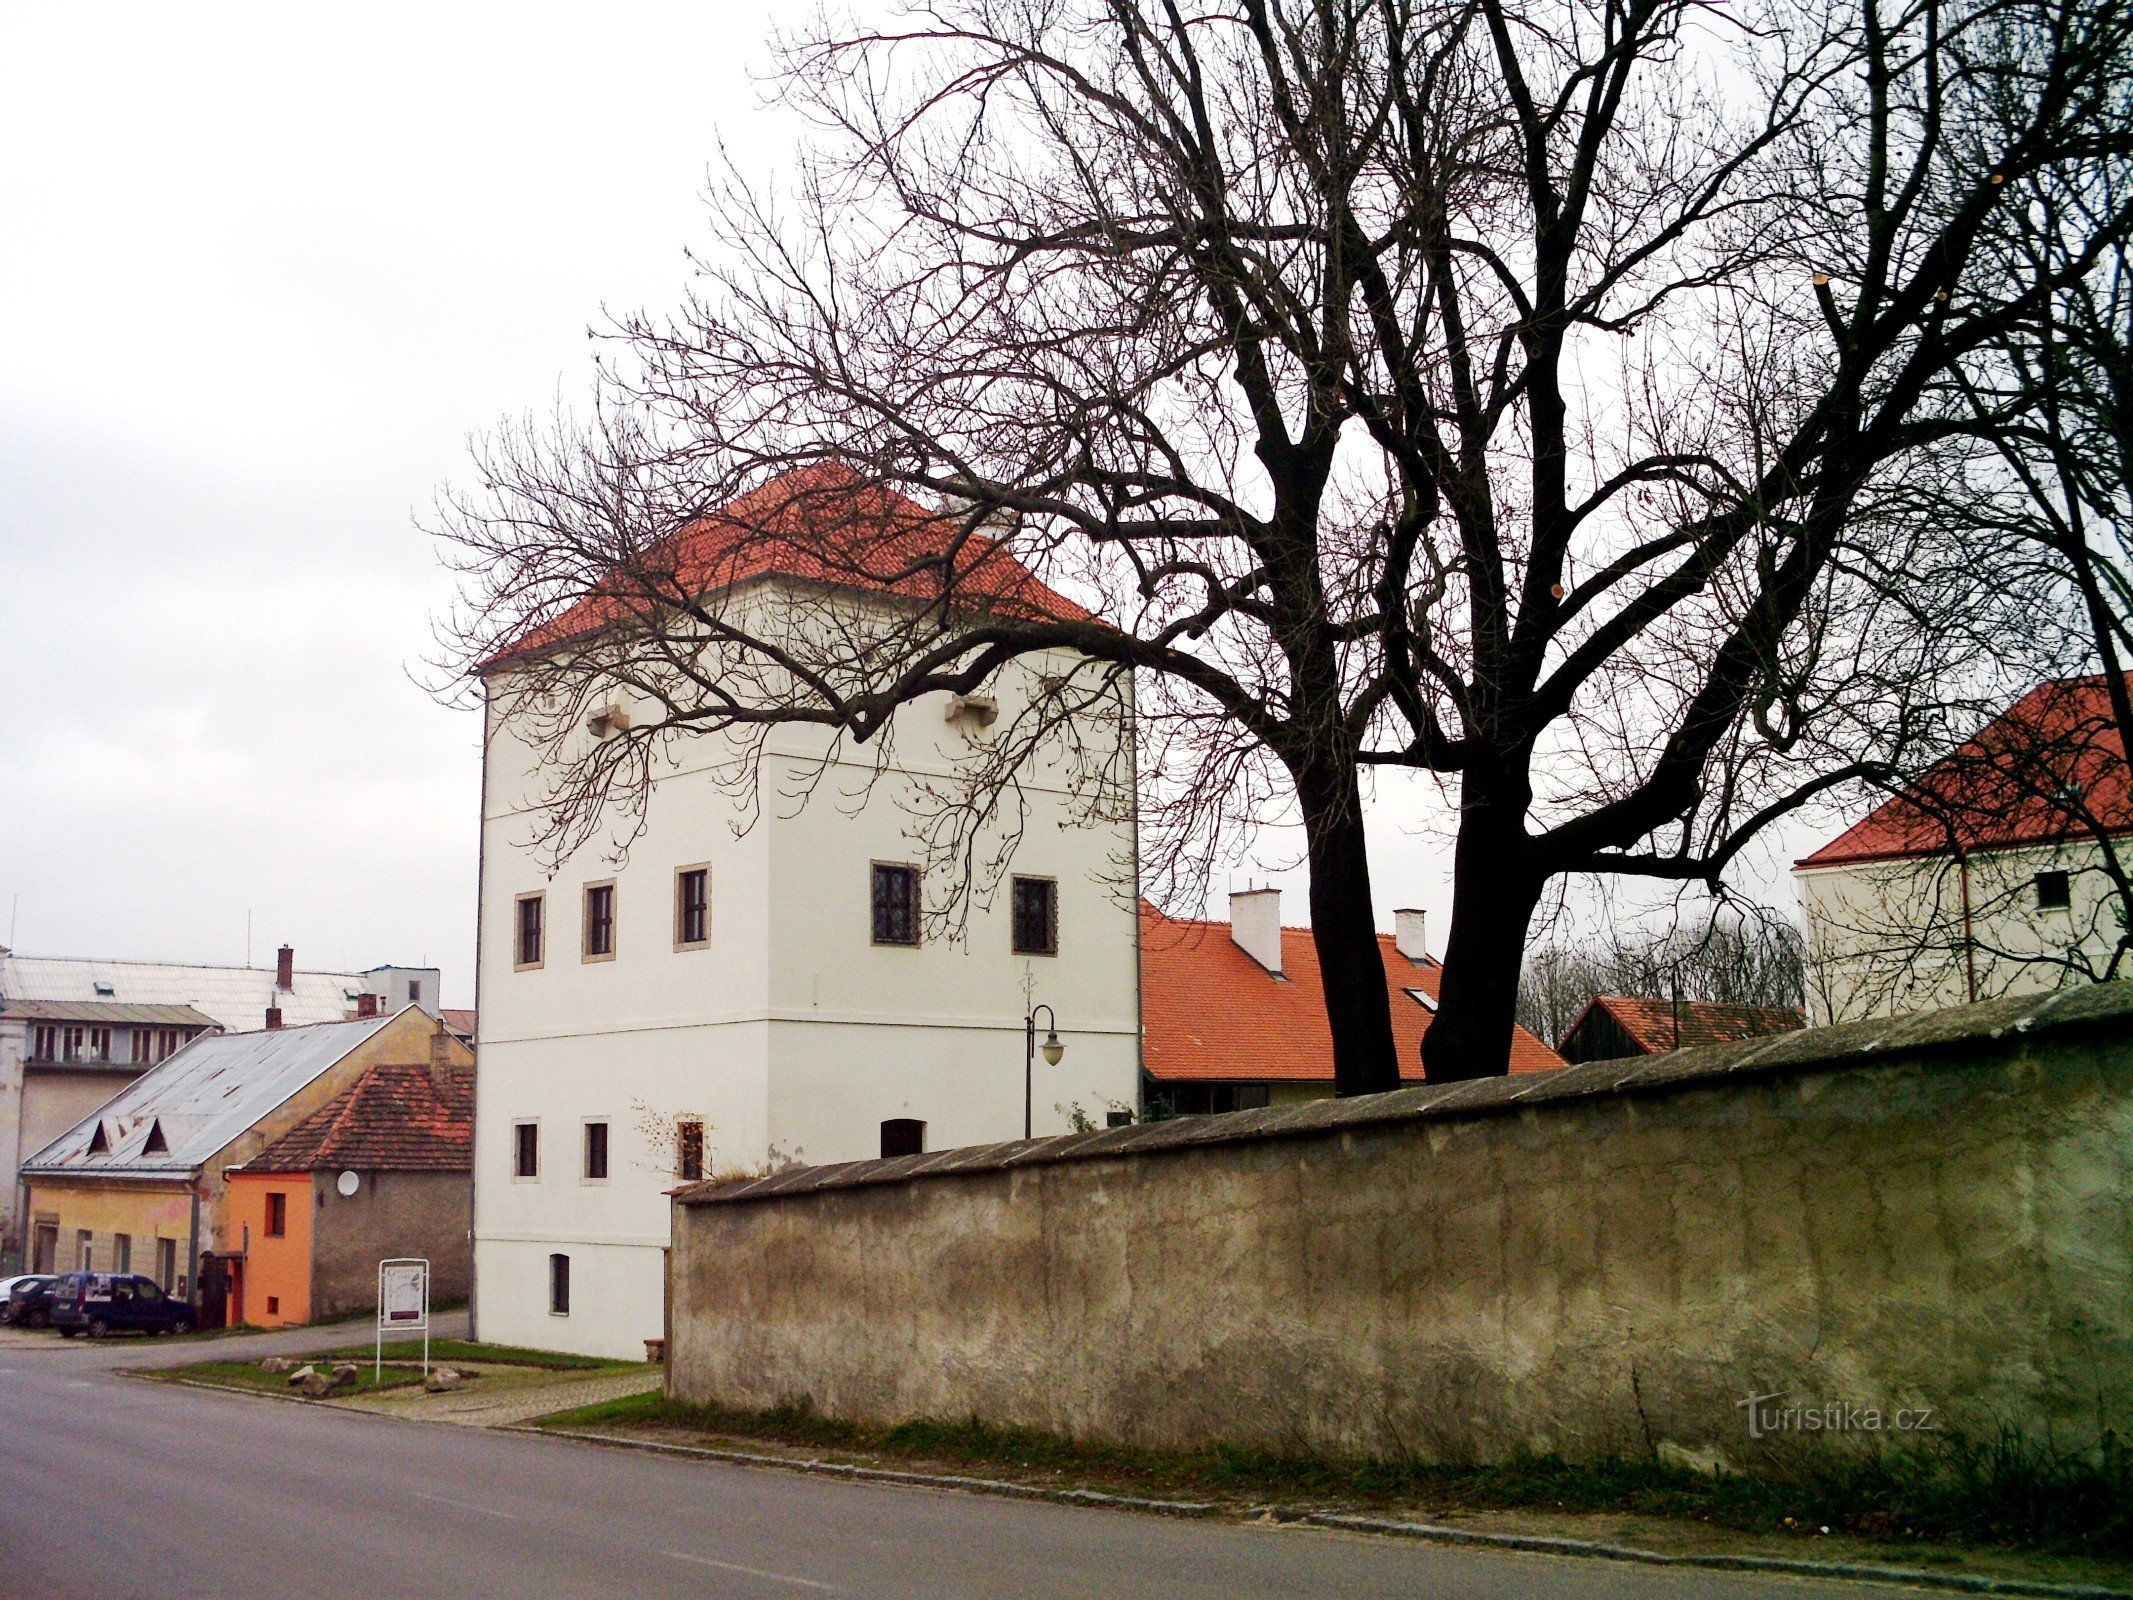 Goltz's fortress, ul. 5. května 8, Golčův Jeníkov